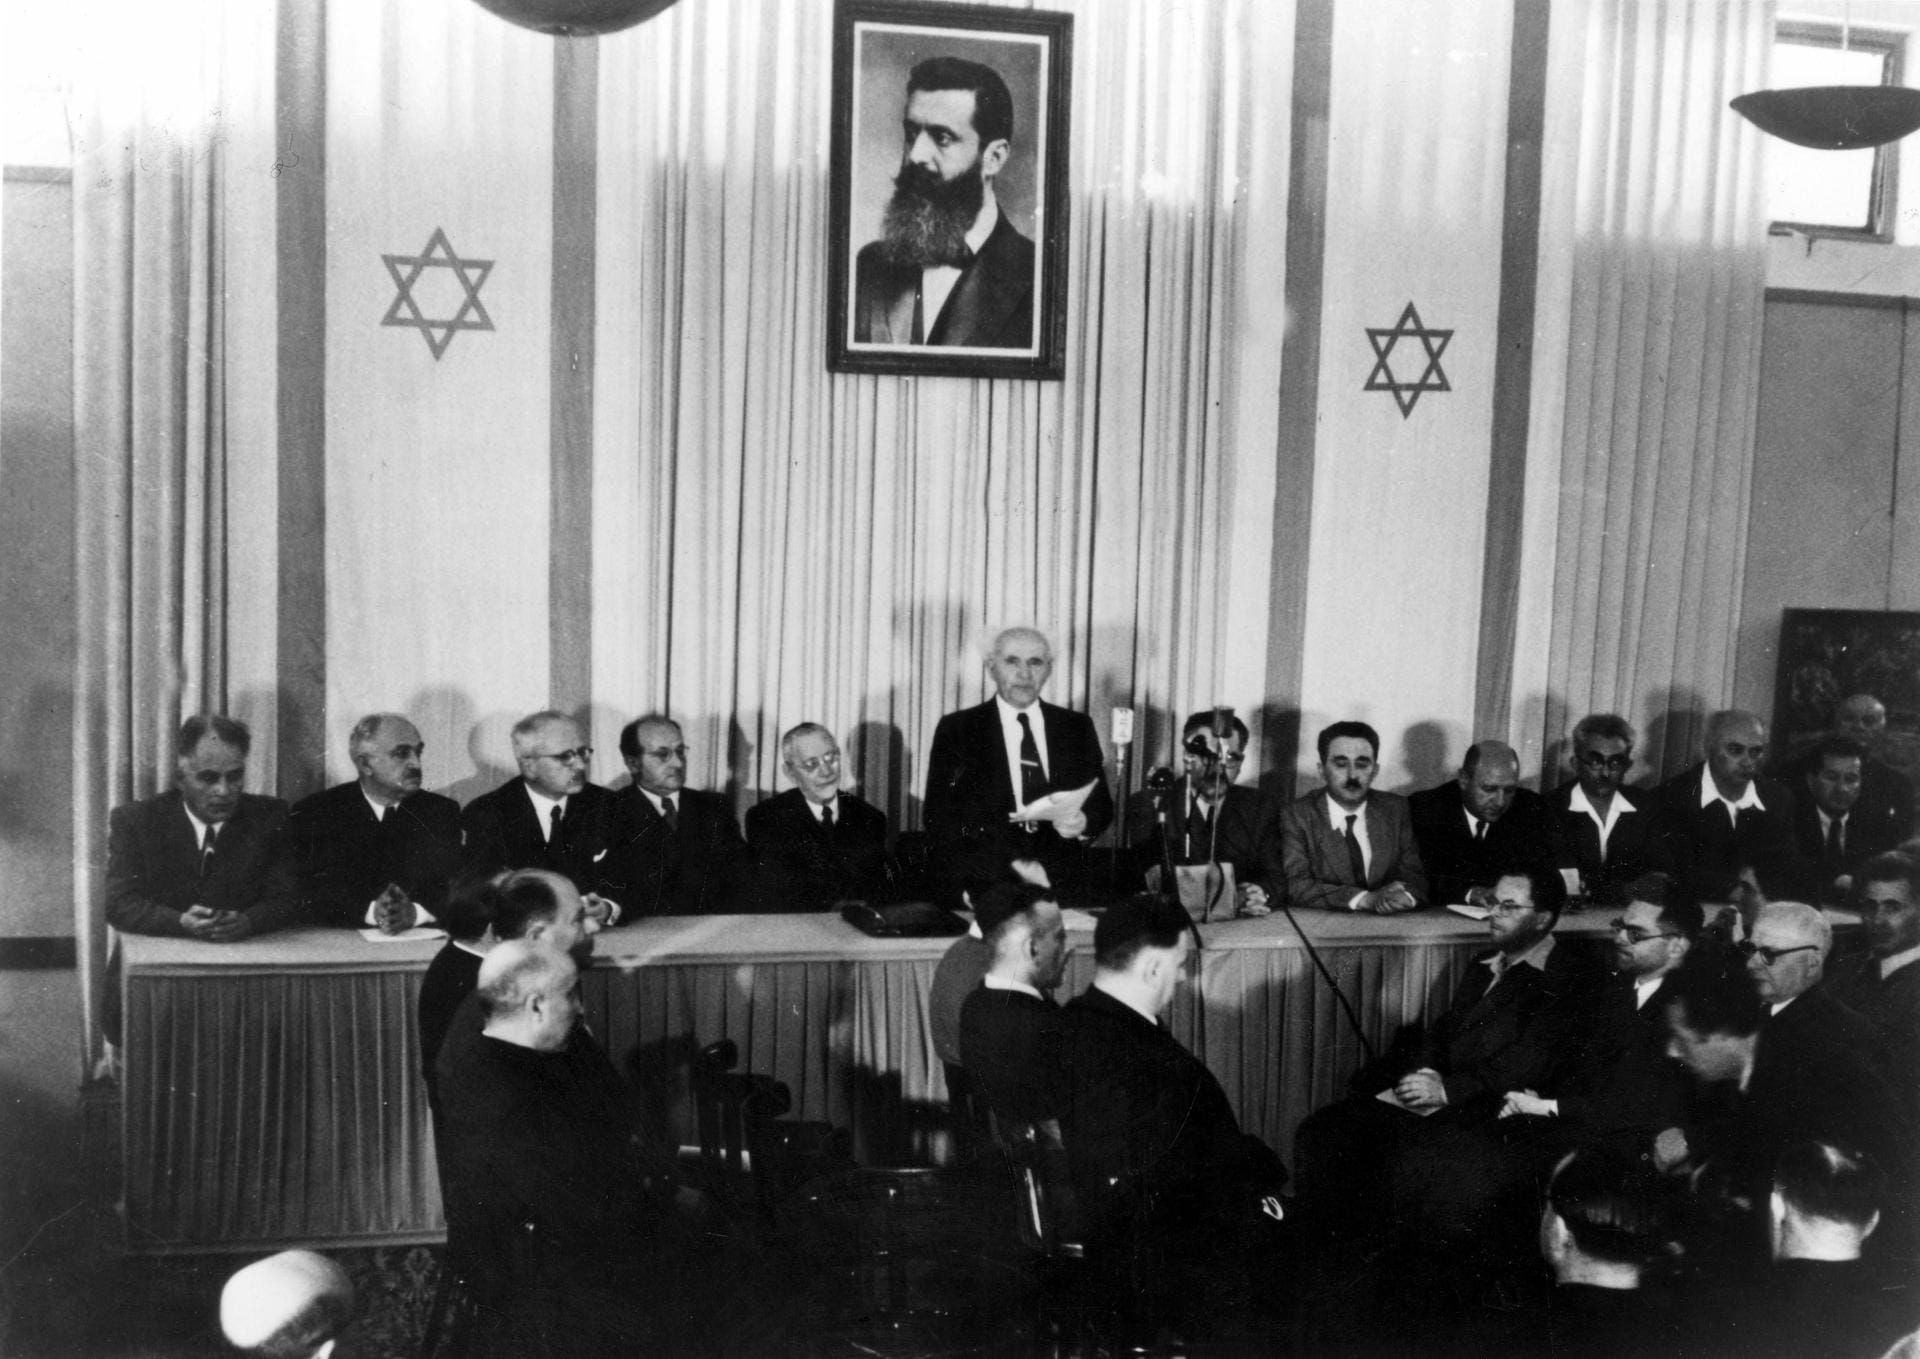 Am 14. Mai 1948 rief David Ben Gurion im Tel Aviver Kunstmuseum den Staat Israel aus. Über ihm hing ein Bild von Theodor Herzl, dem 1904 verstorbenen Begründer des Zionismus. Also der Idee, einen neuen jüdischen Staat zu gründen.